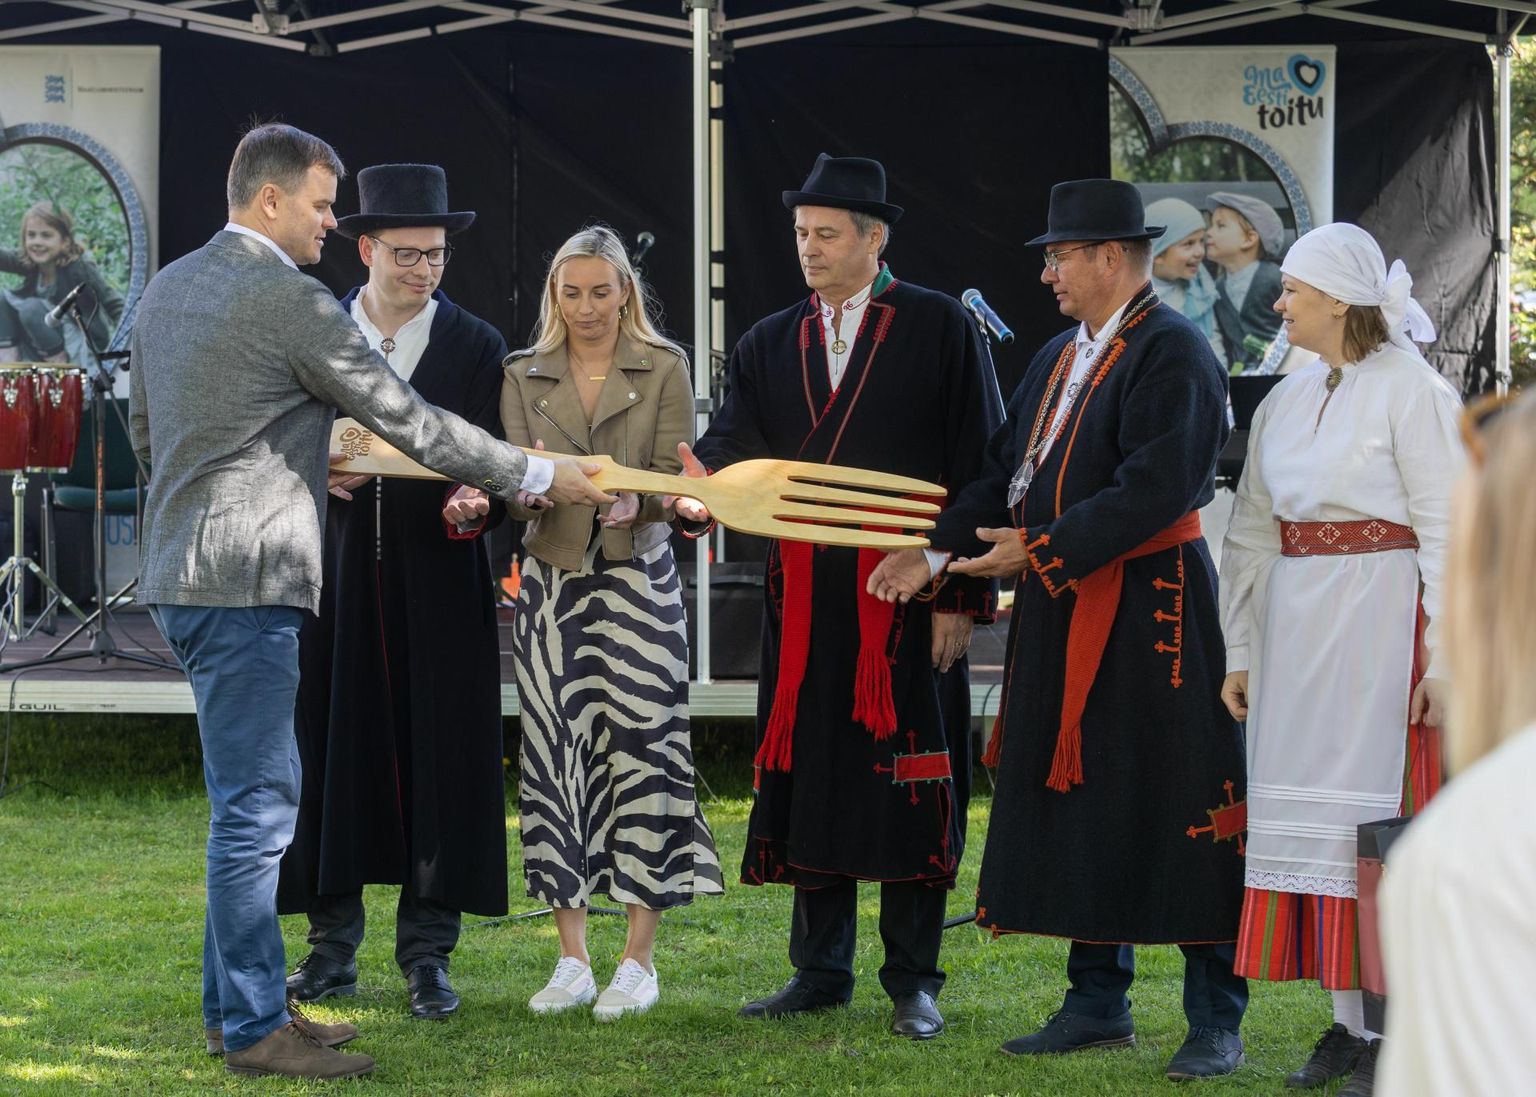 Regionaalminister Madis Kallas ulatas Eesti toidupiirkonda tähistava hiigelkahvli Mulgimaa vallavanemate, Mulgi vanema ja toidupiirkonna projektijuhi Leana Liivsoni hoole alla.